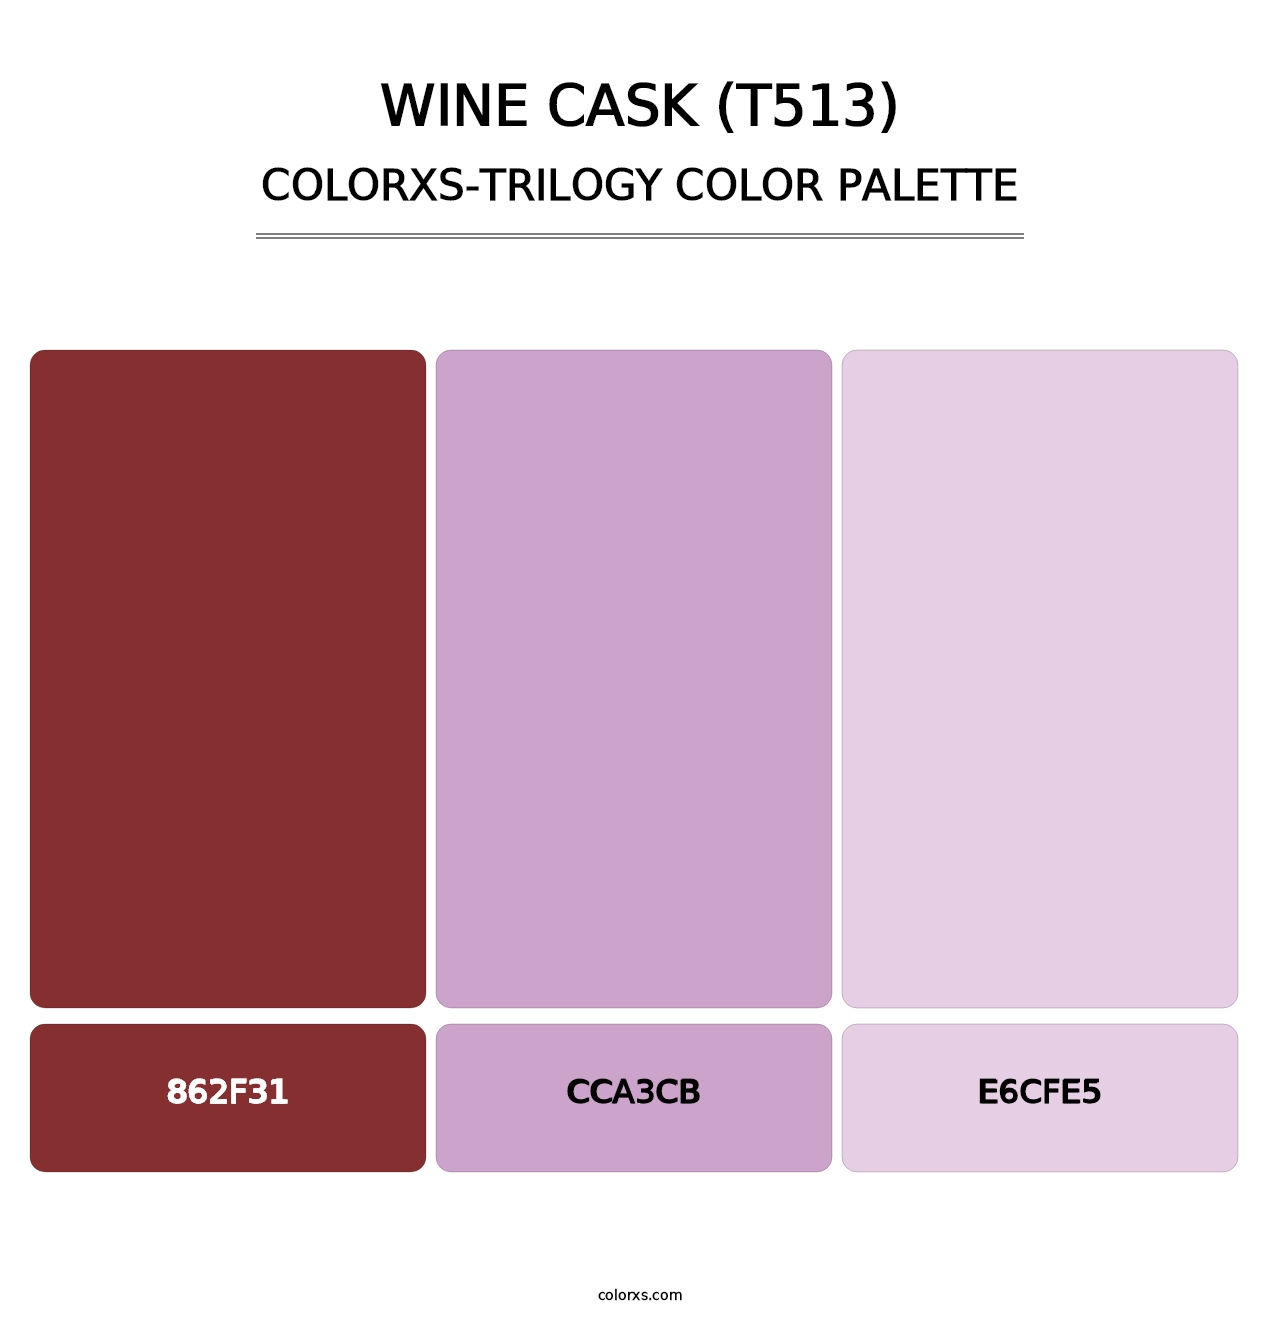 Wine Cask (T513) - Colorxs Trilogy Palette